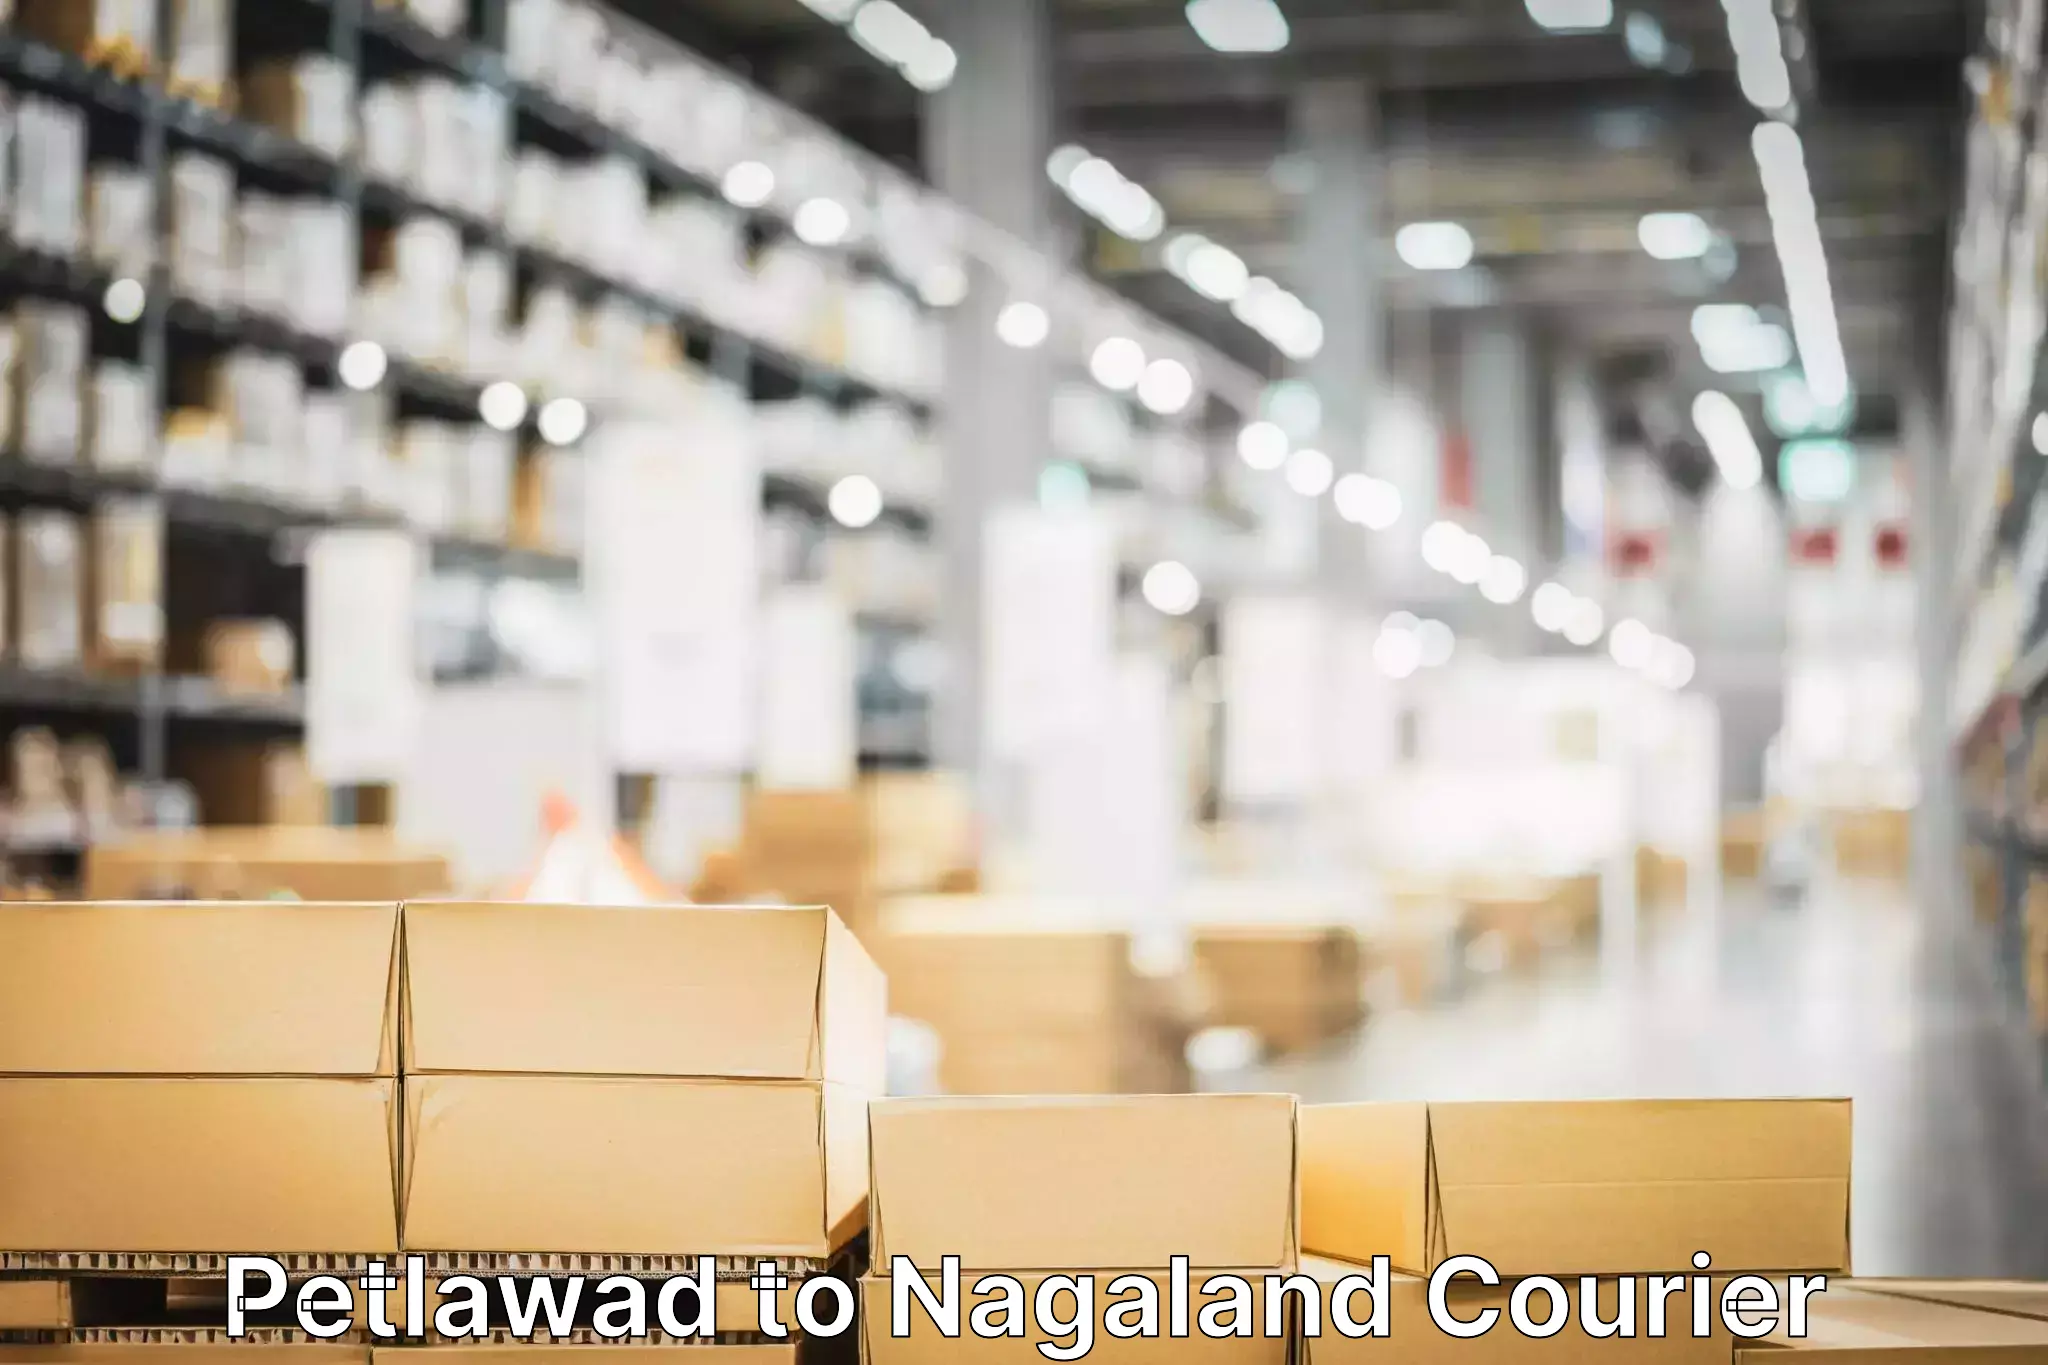 Global shipping solutions Petlawad to Nagaland